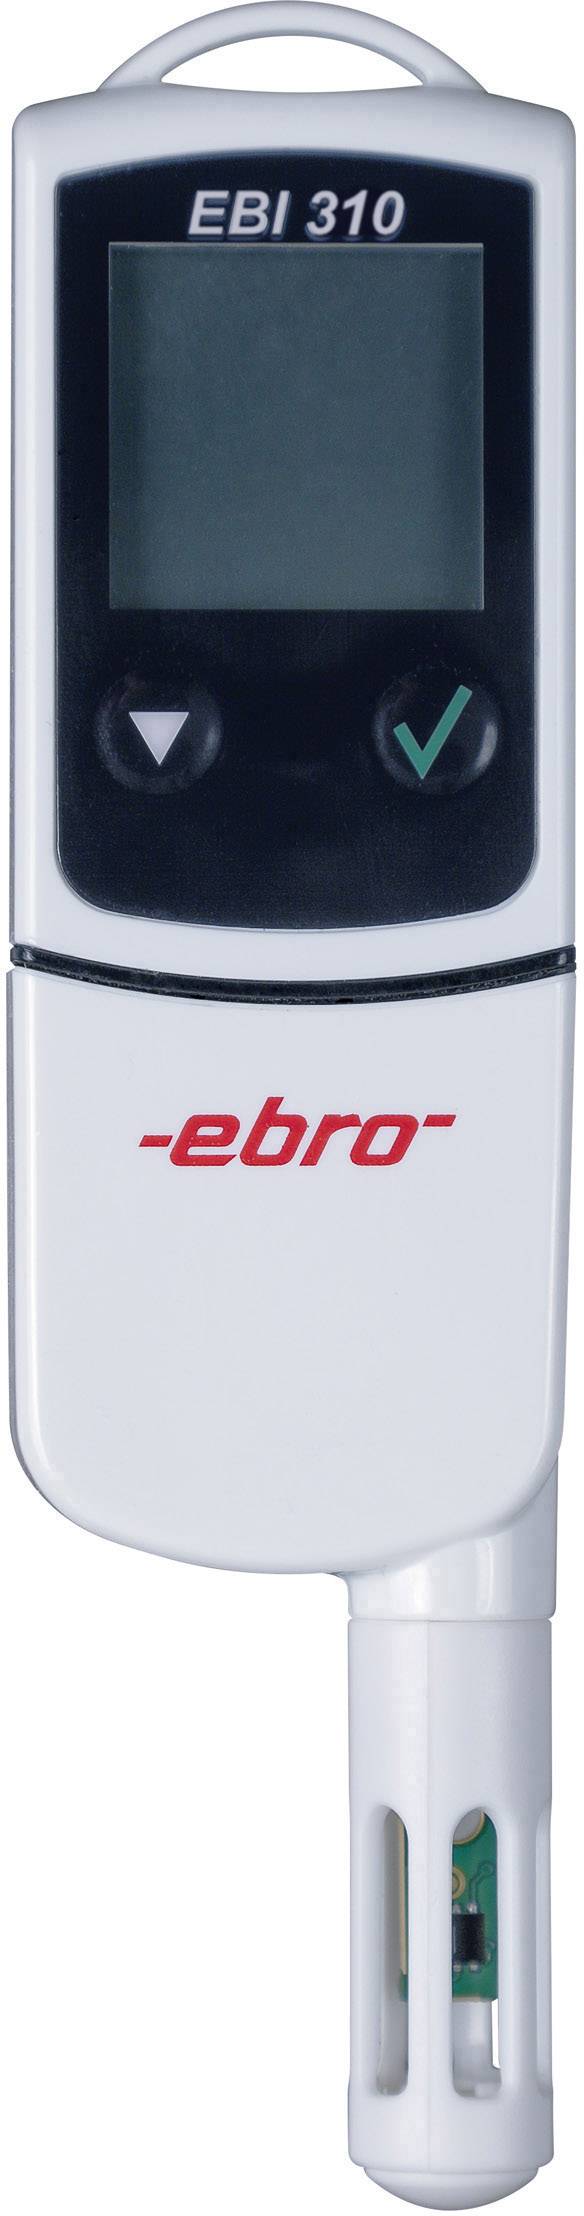 EBRO Multi-Datenlogger ebro EBI 310 TH Messgröße Temperatur, Luftfeuchtigkeit -30 bis 75 °C 0 bis 10